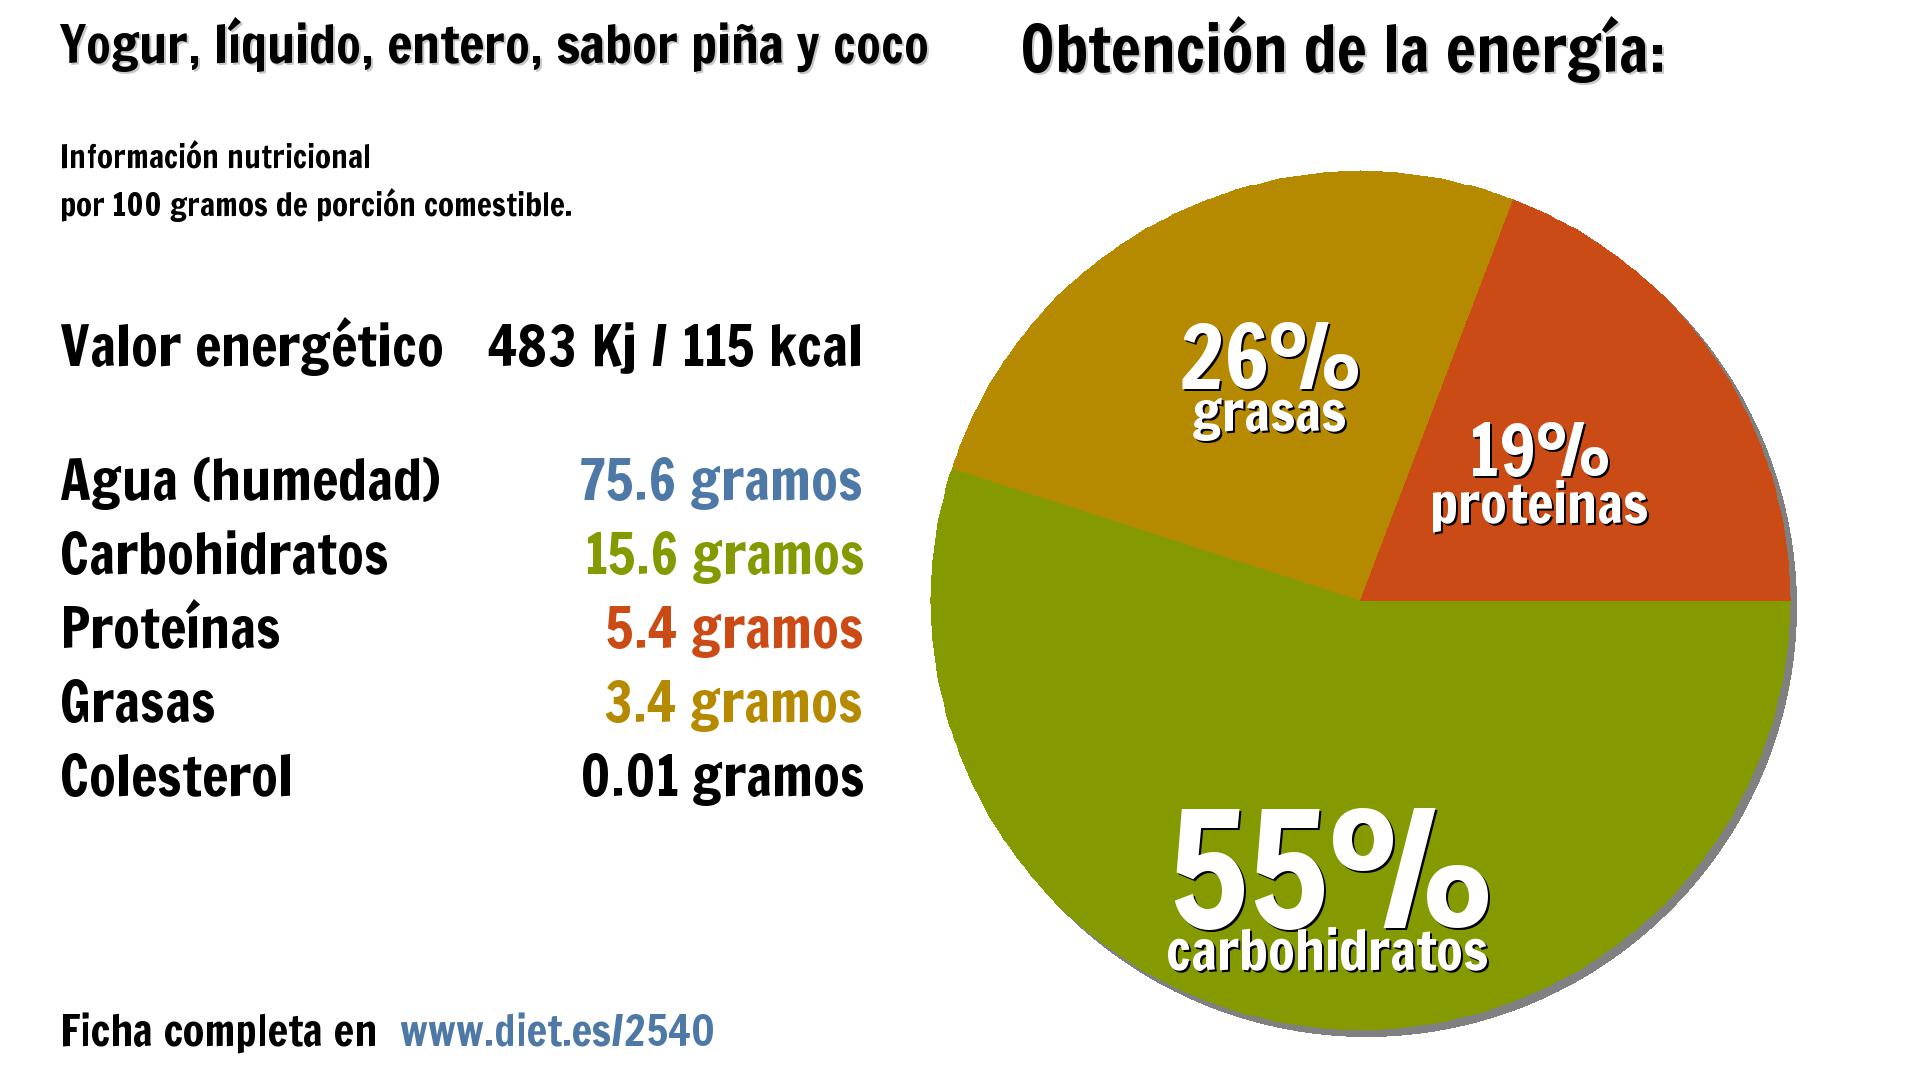 Yogur, líquido, entero, sabor piña y coco: energía 483 Kj, agua 76 g., carbohidratos 16 g., proteínas 5 g. y grasas 3 g.